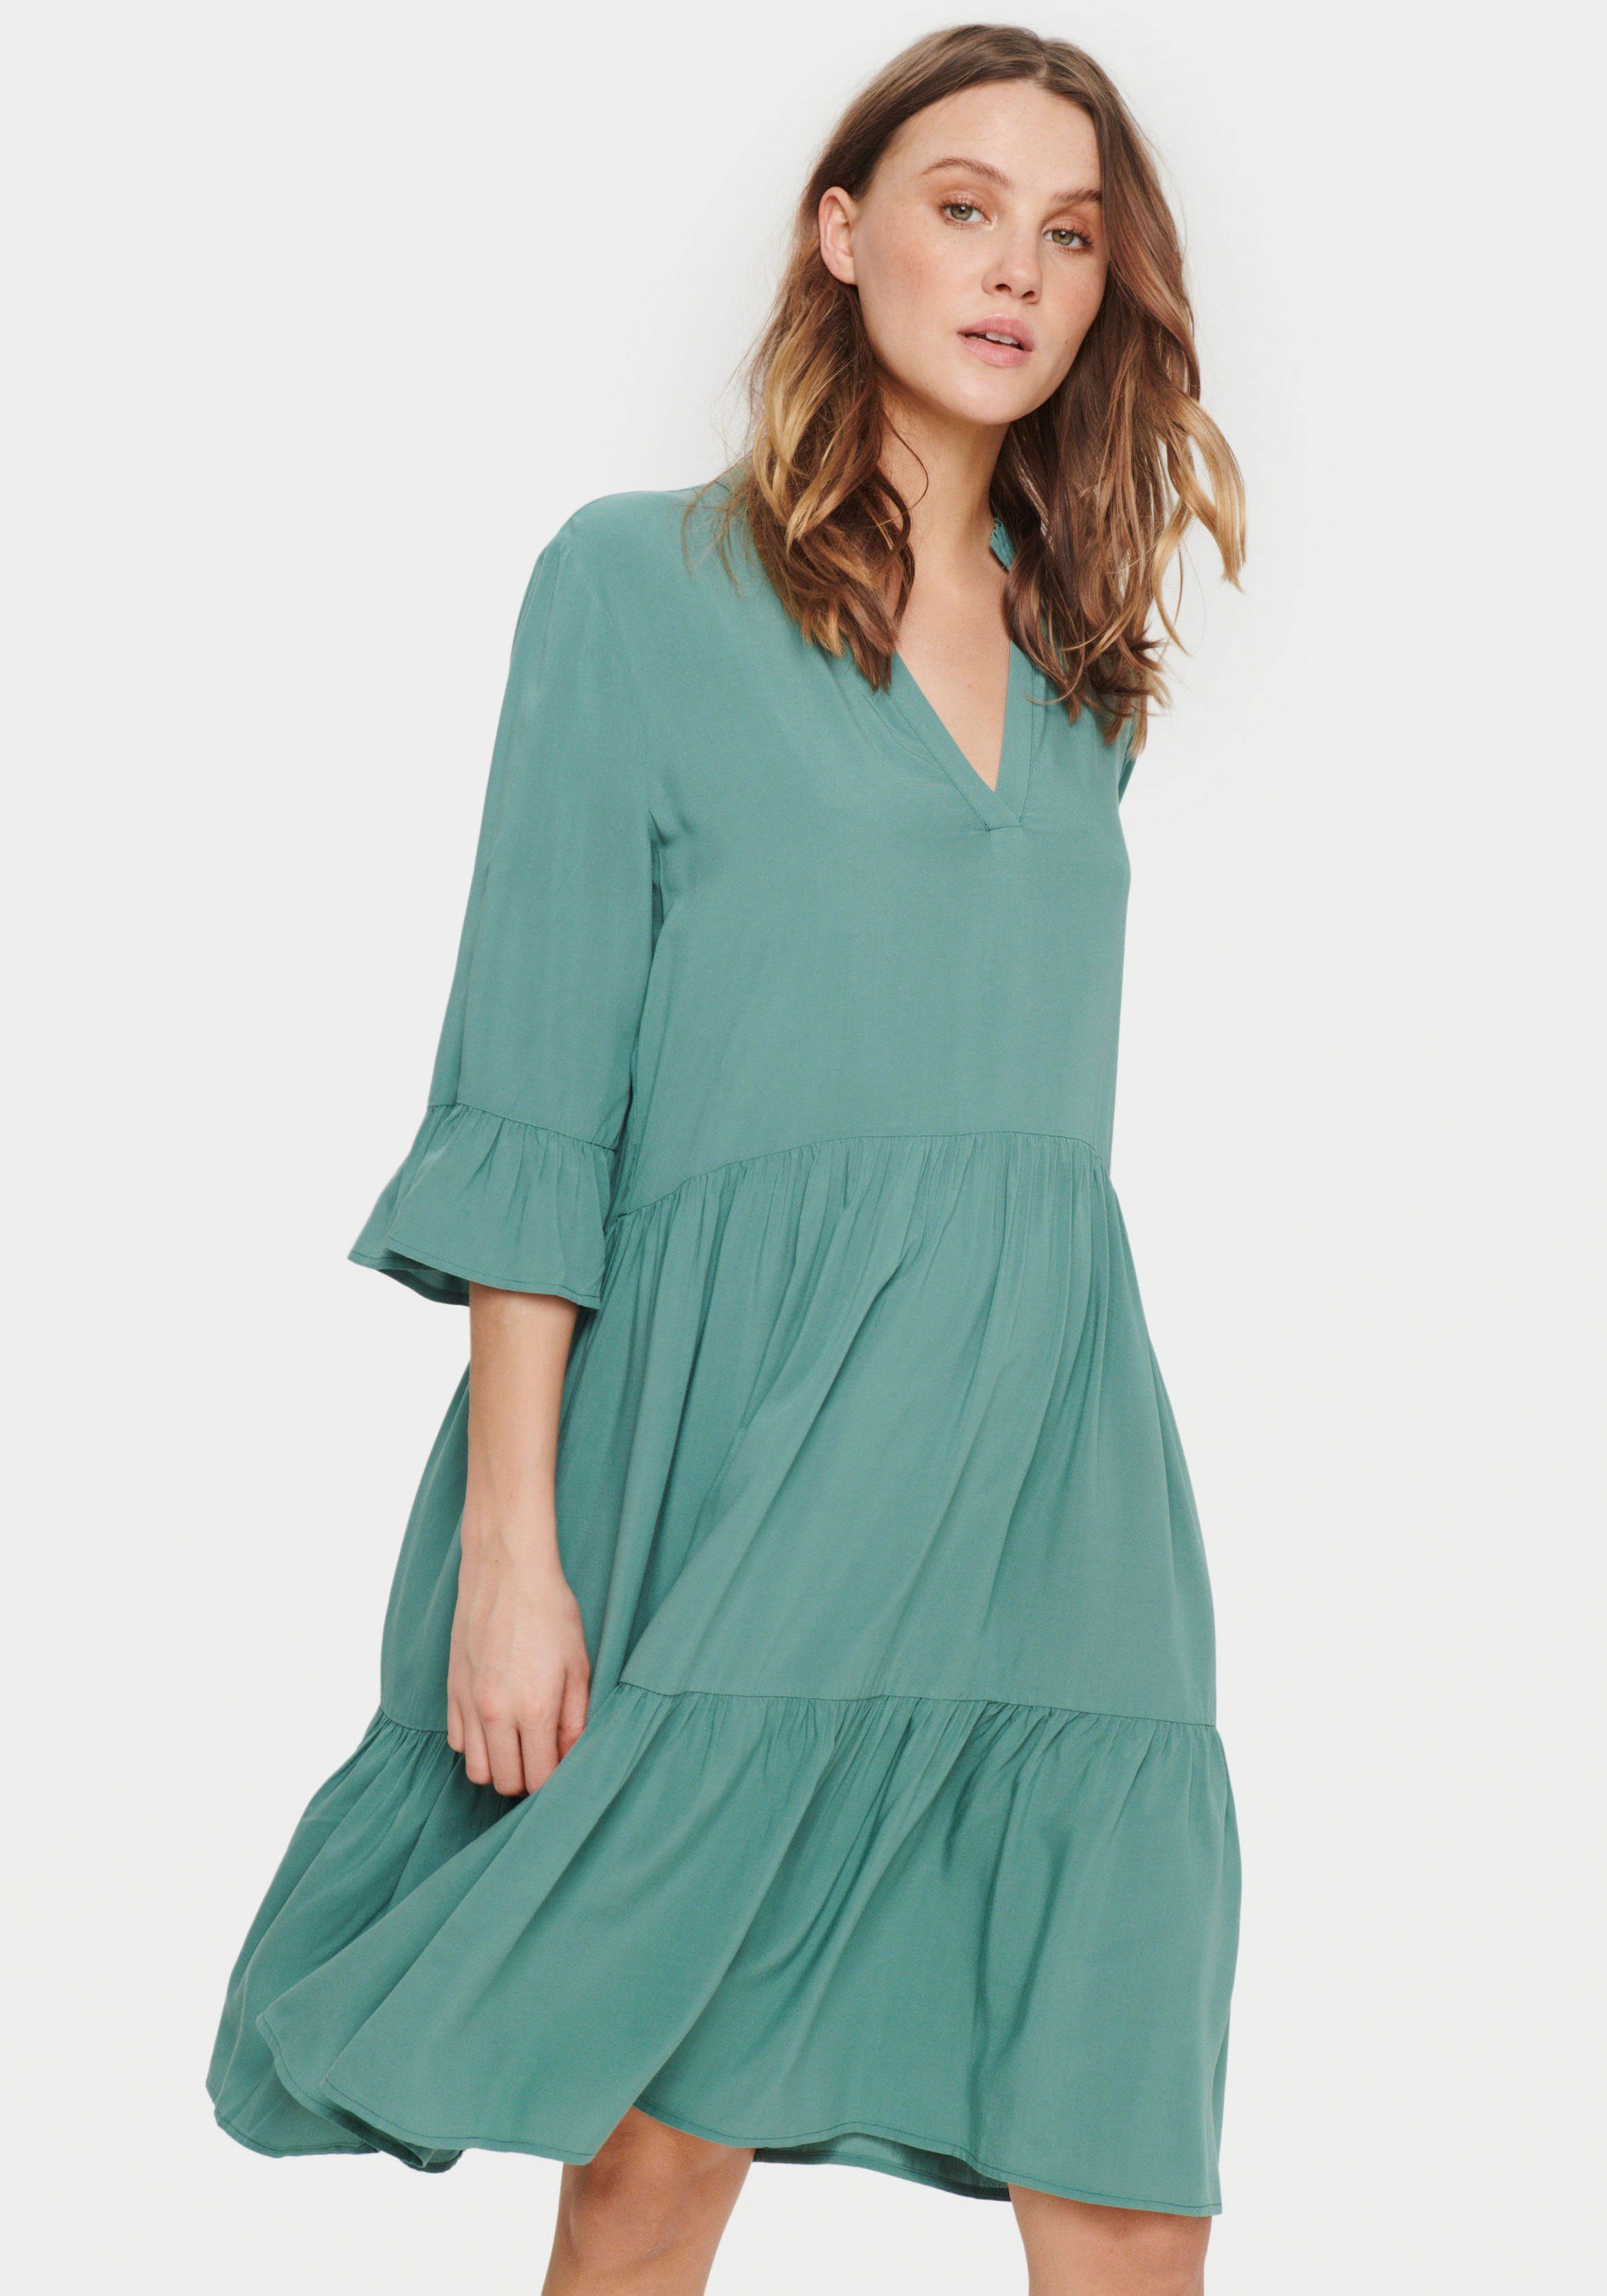 Saint Tropez Sommerkleid EdaSZ Dress mit Volant und 3/4 Ärmel Sagebrush Green | Sommerkleider